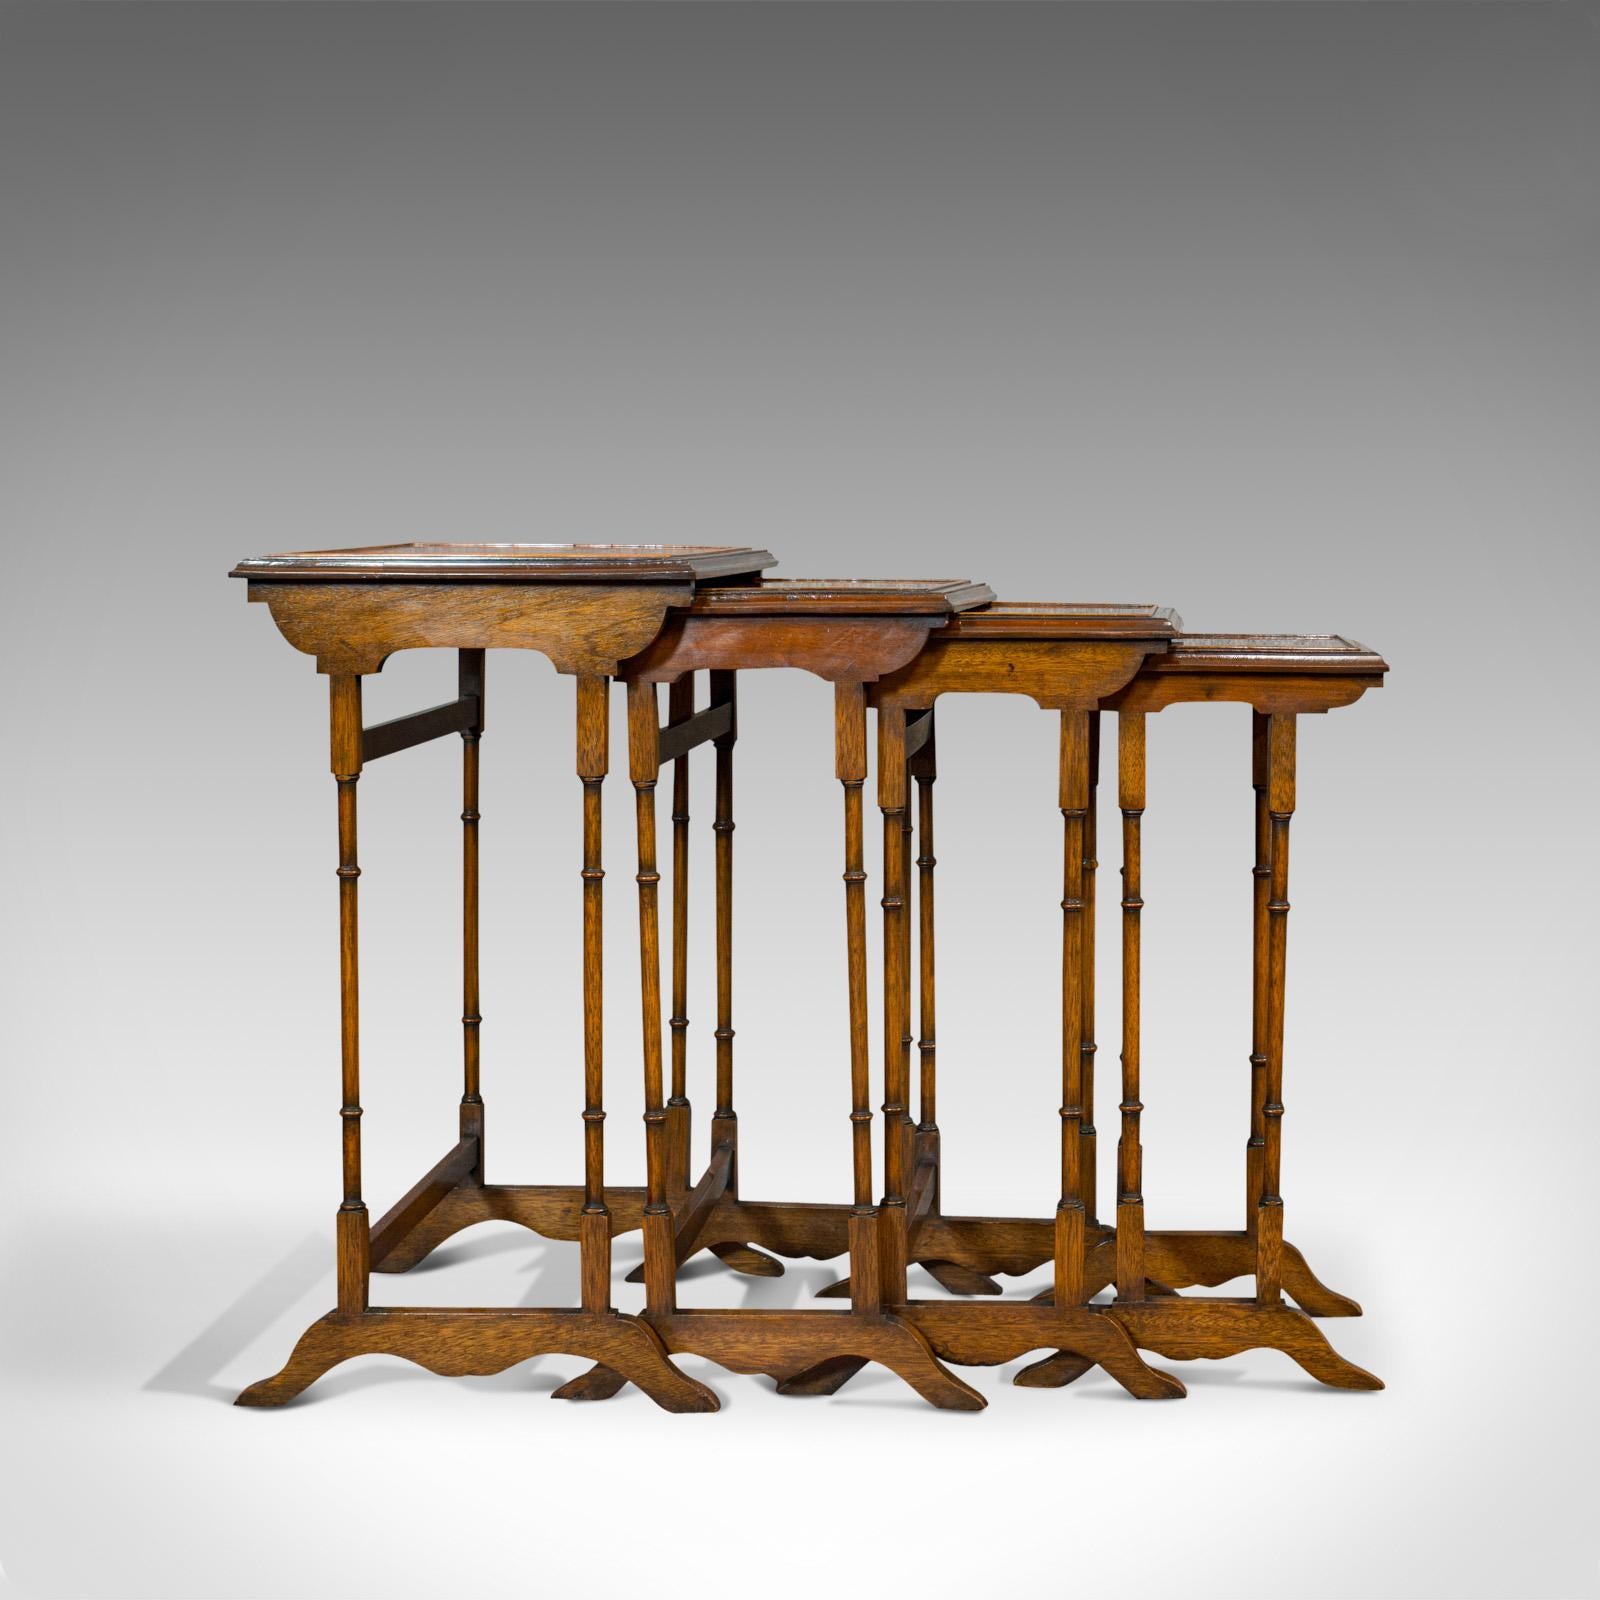 British Antique Quartetto of Tables, English, Walnut, Mahogany, Nest, Edwardian